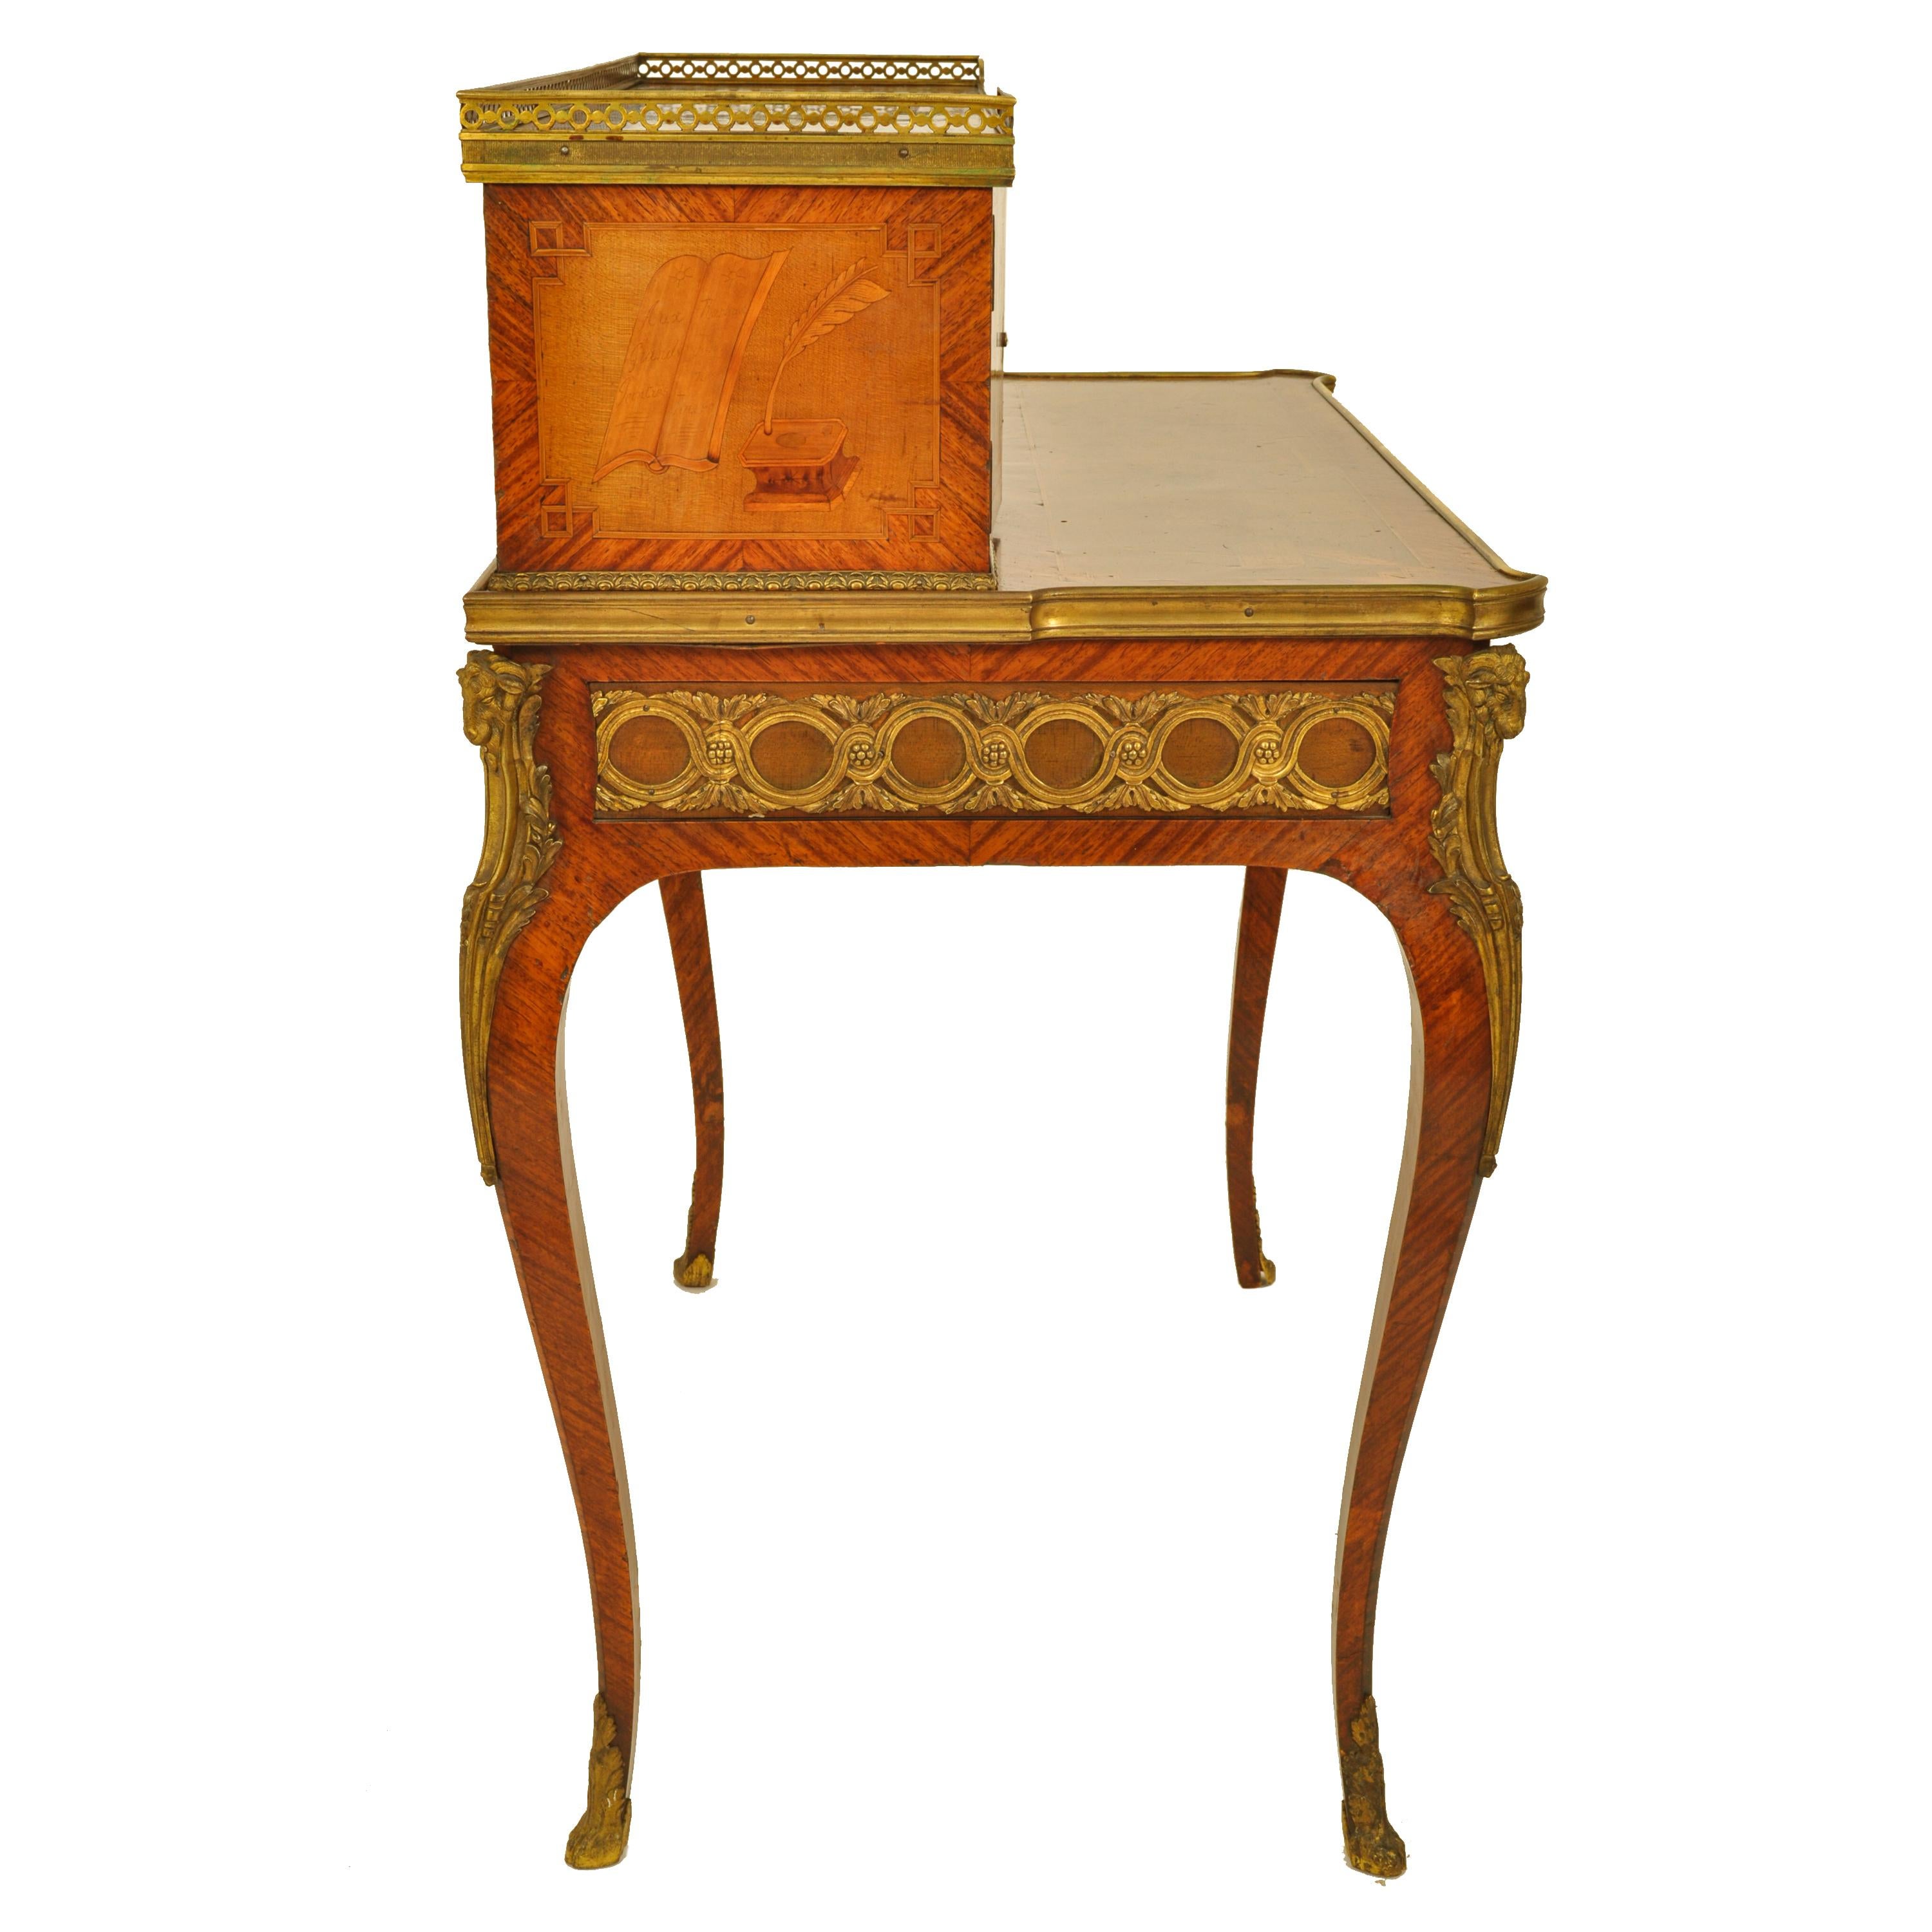 Antique Louis XV Ormolu Marquetry Bonheur Du Jour Desk Roger Vandercruse 1780  For Sale 1